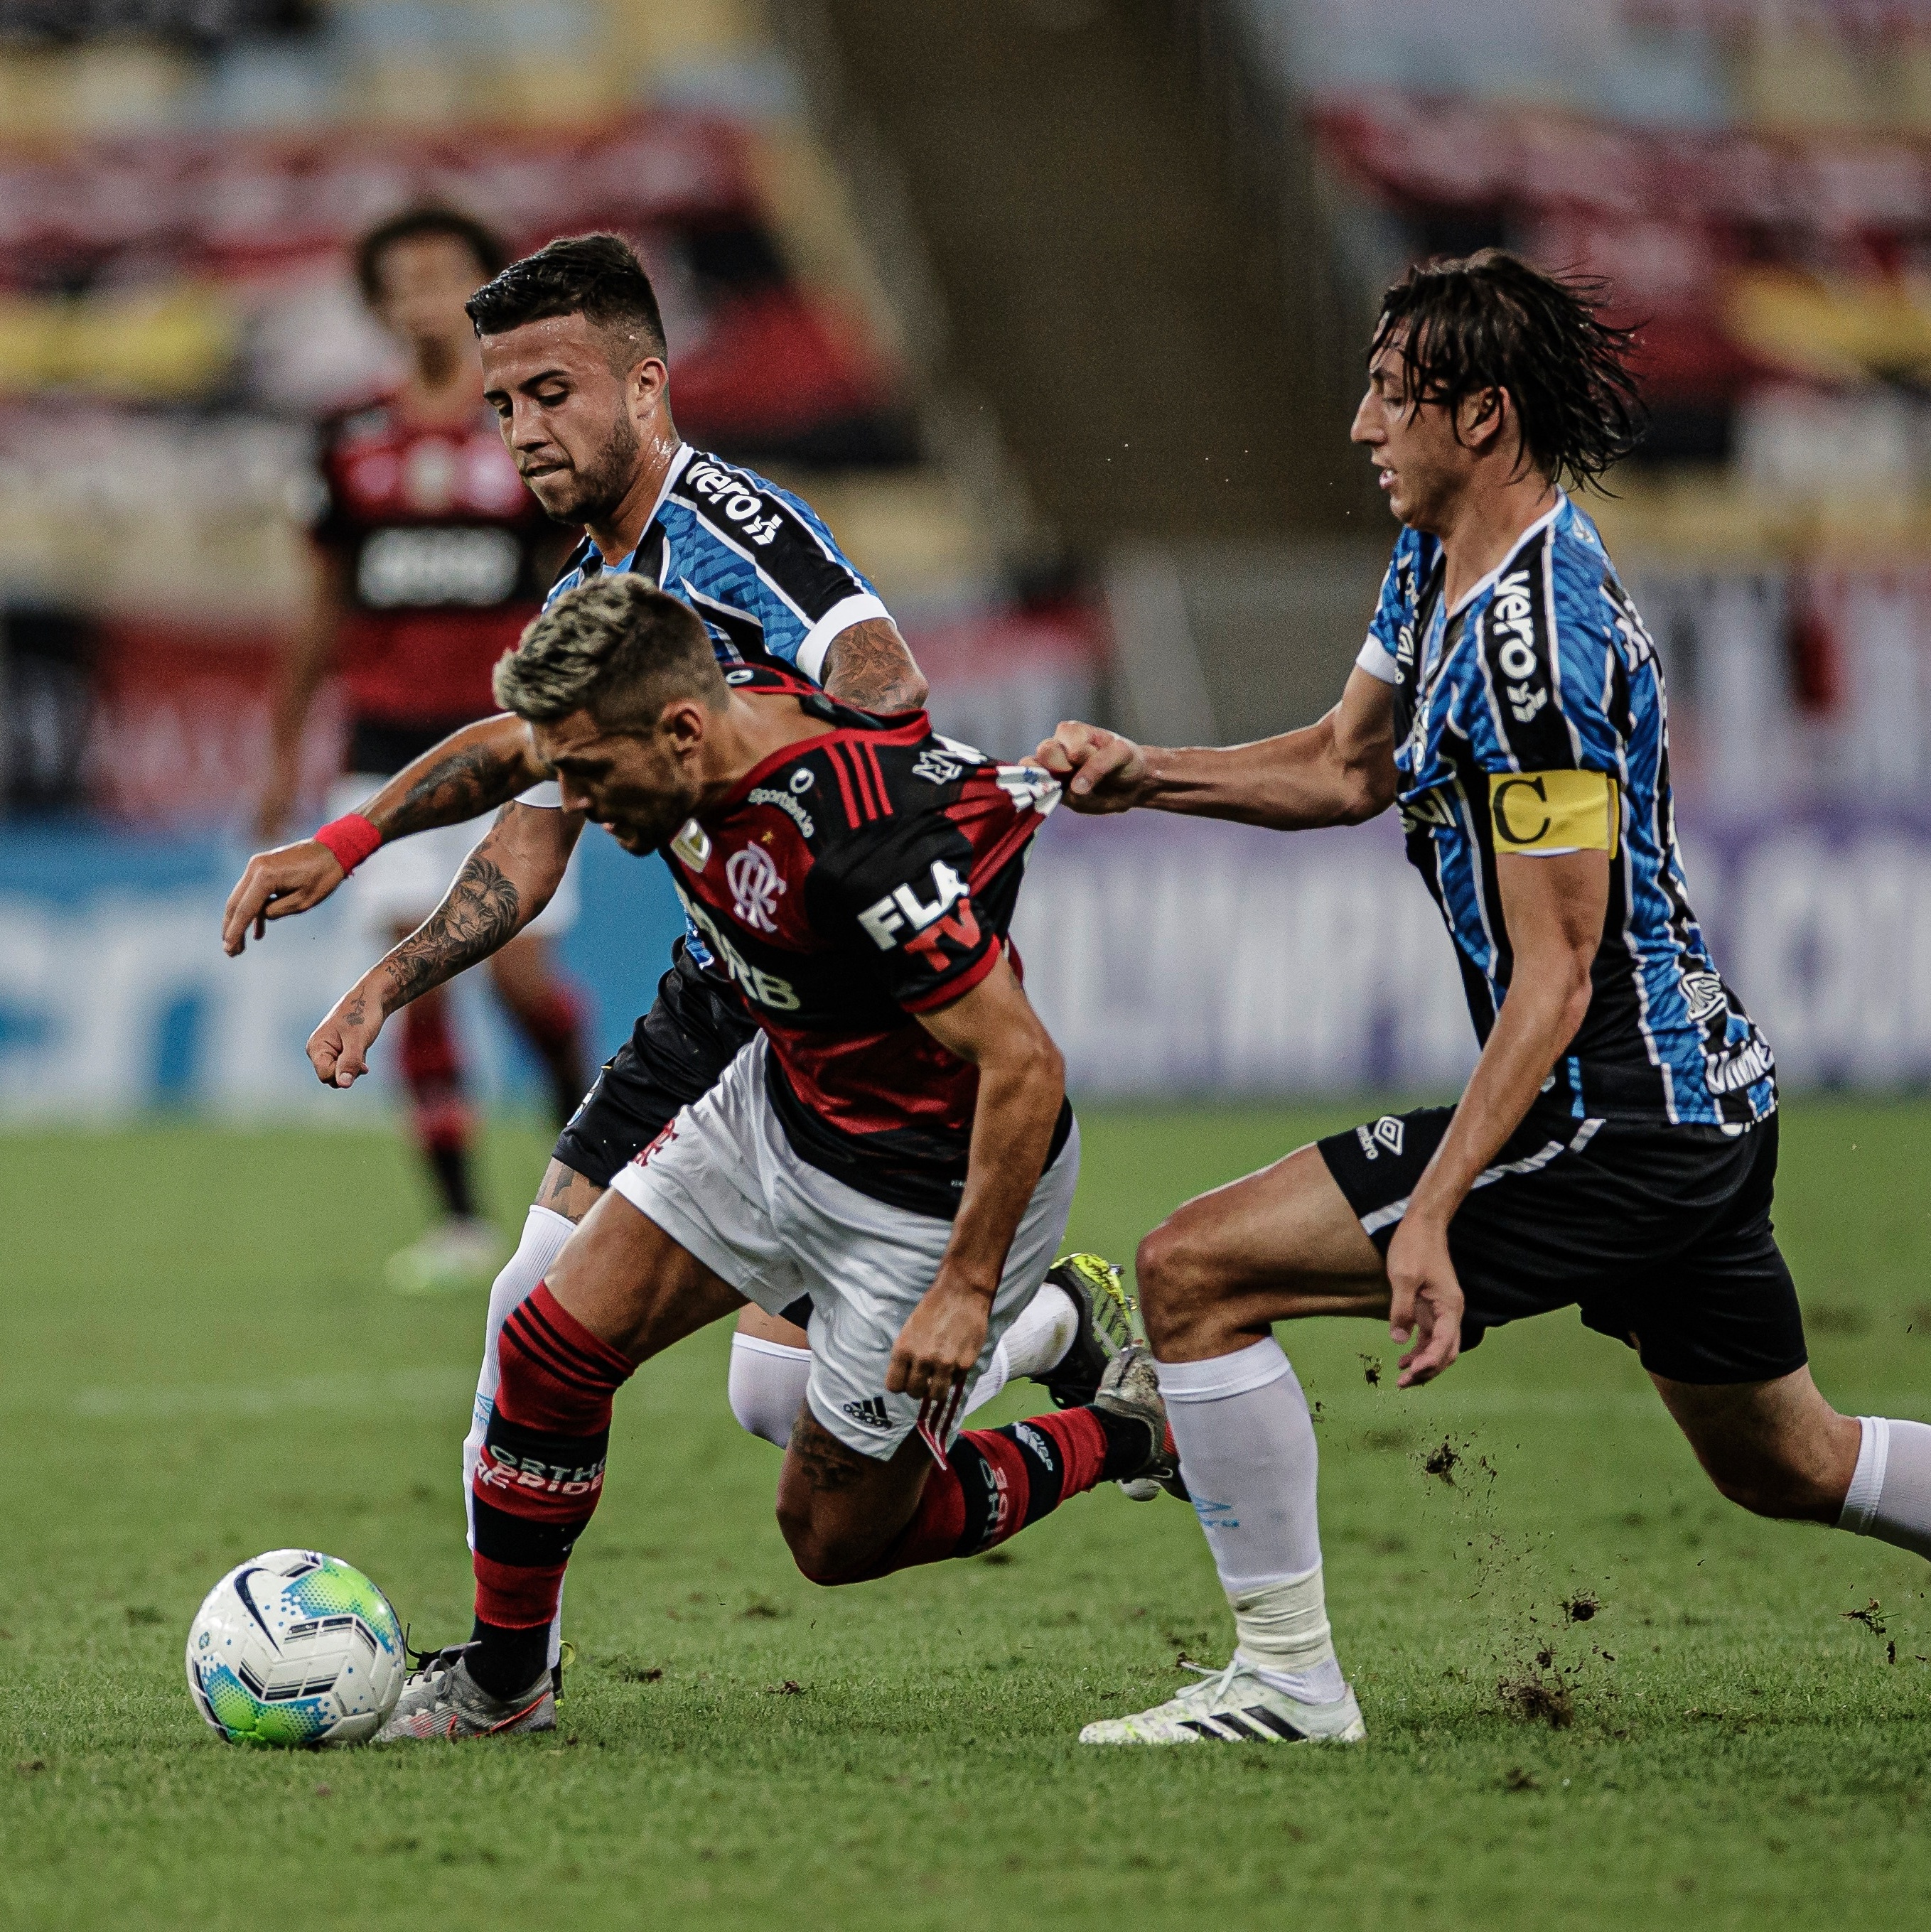 CBF adia jogo entre Corinthians e Grêmio